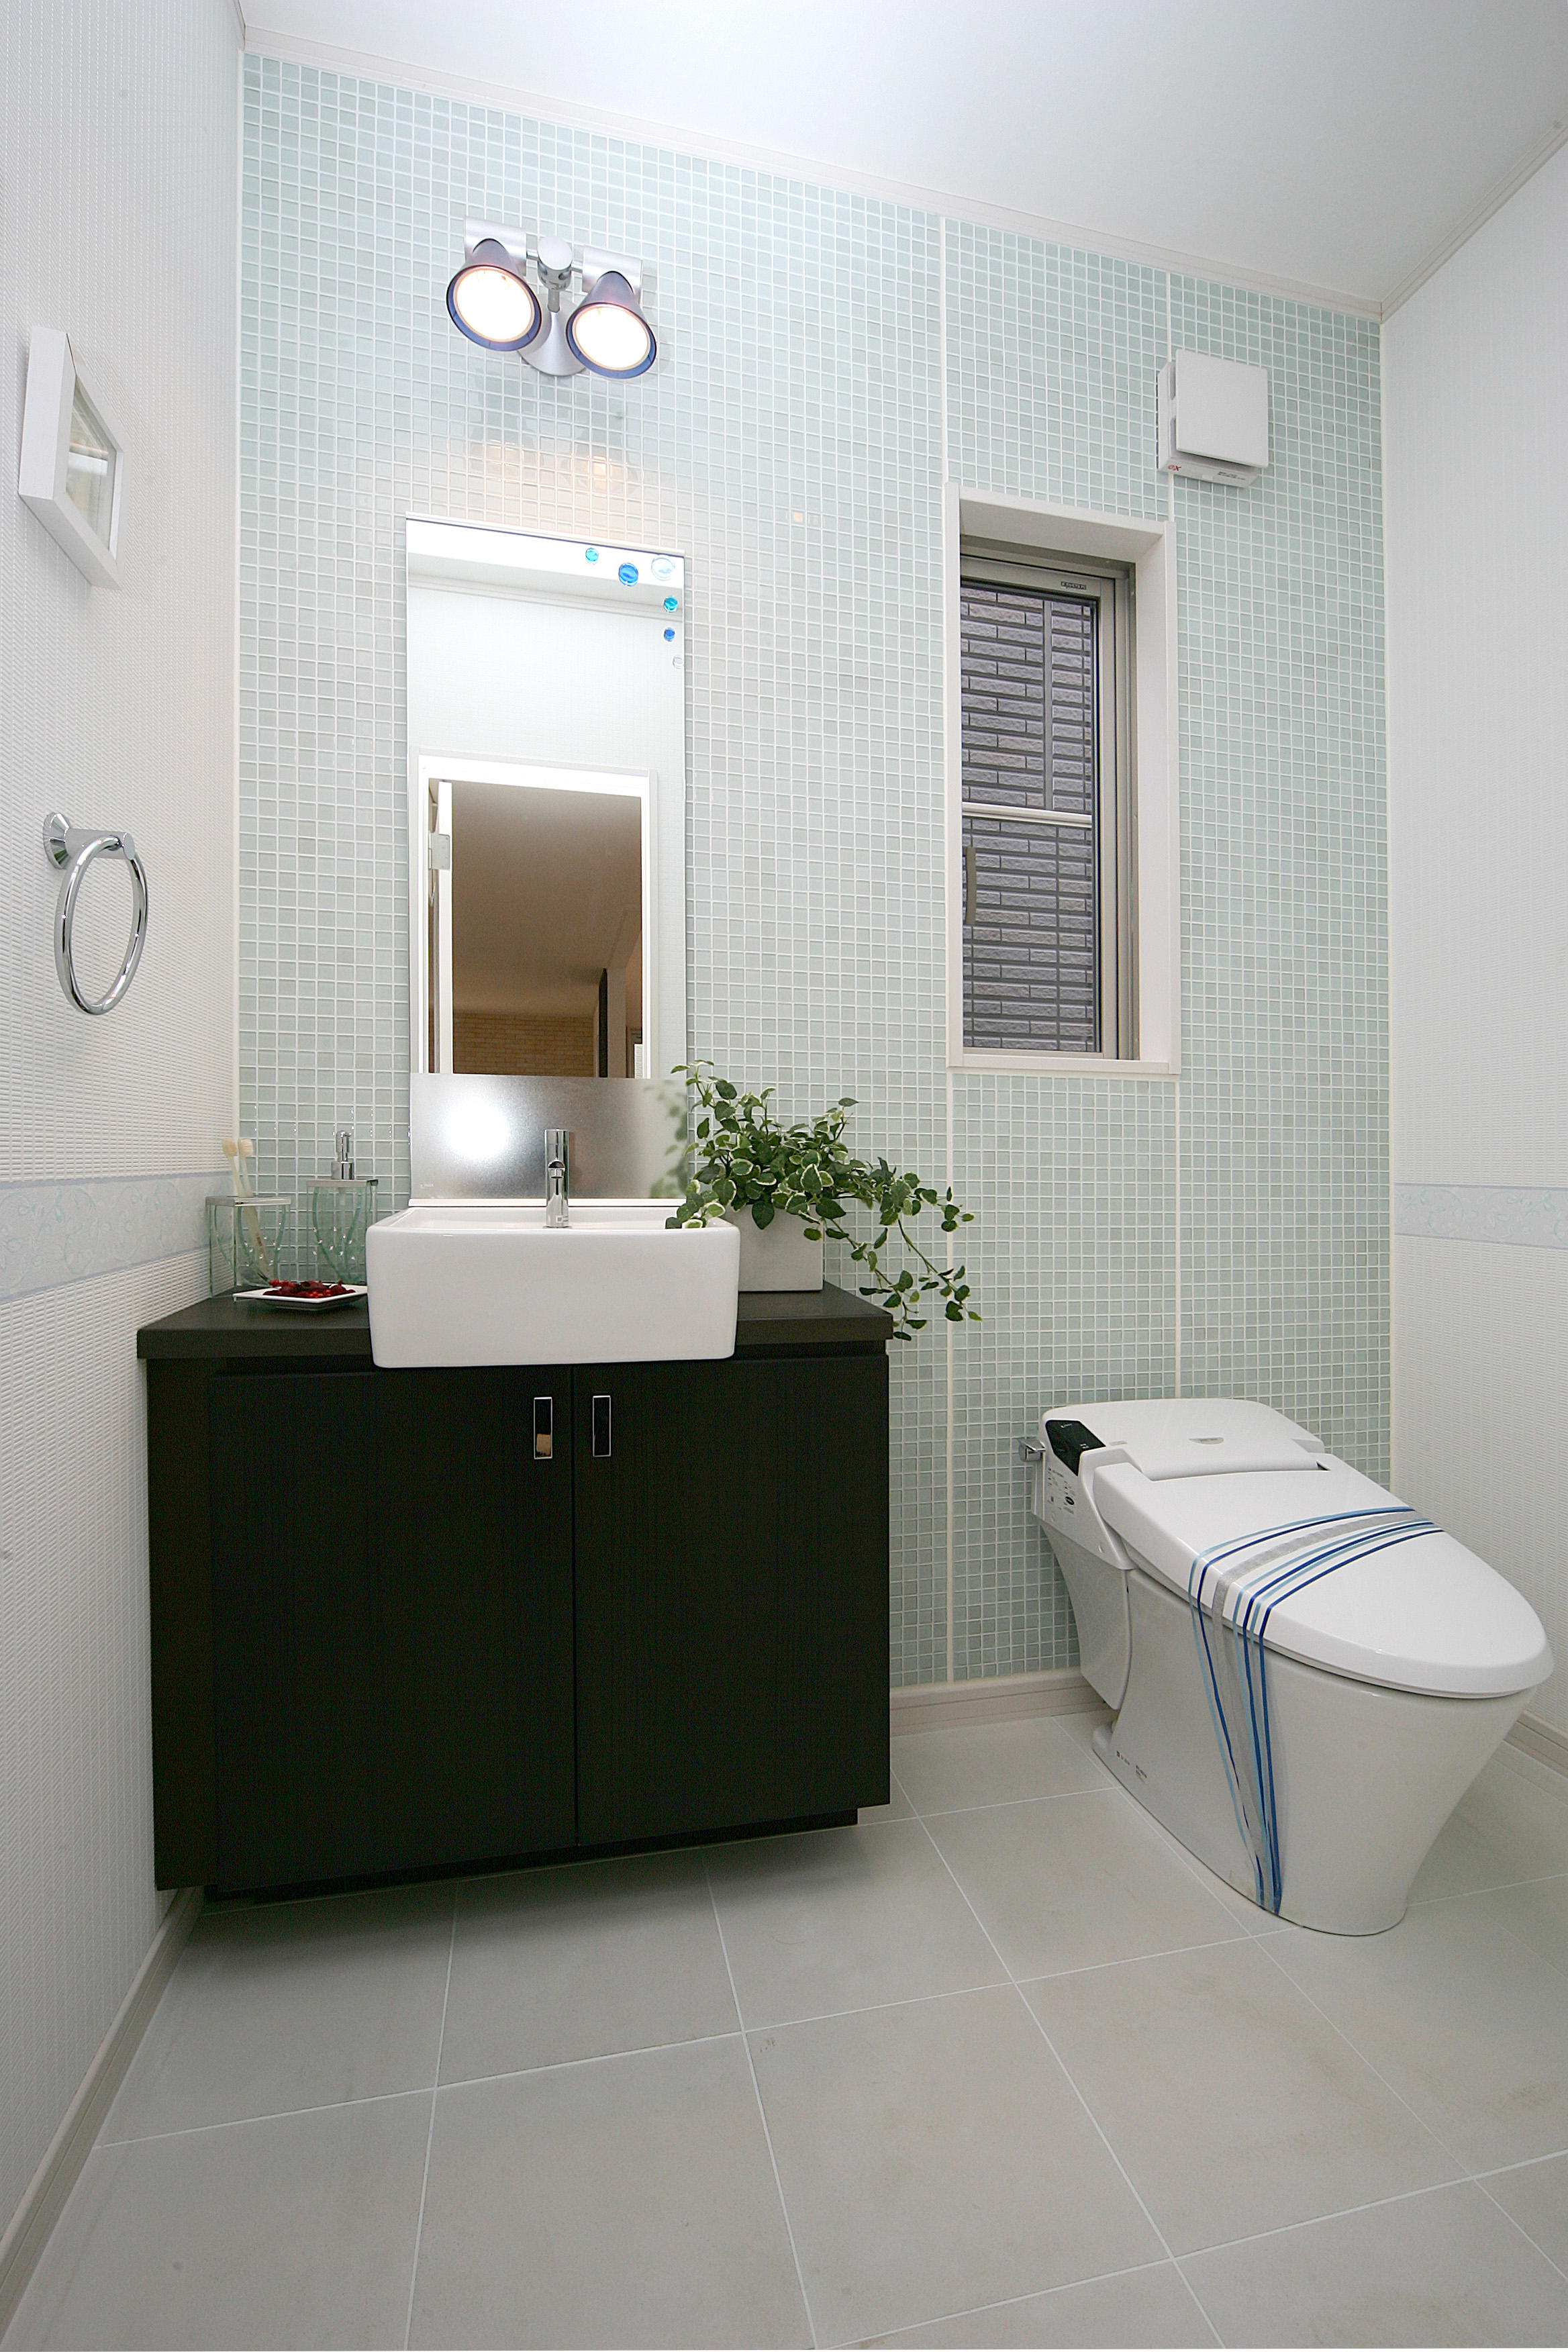 洗面室一体の爽やかなトイレ 部位 部屋別事例一覧 リノベーション東京 理想の部屋